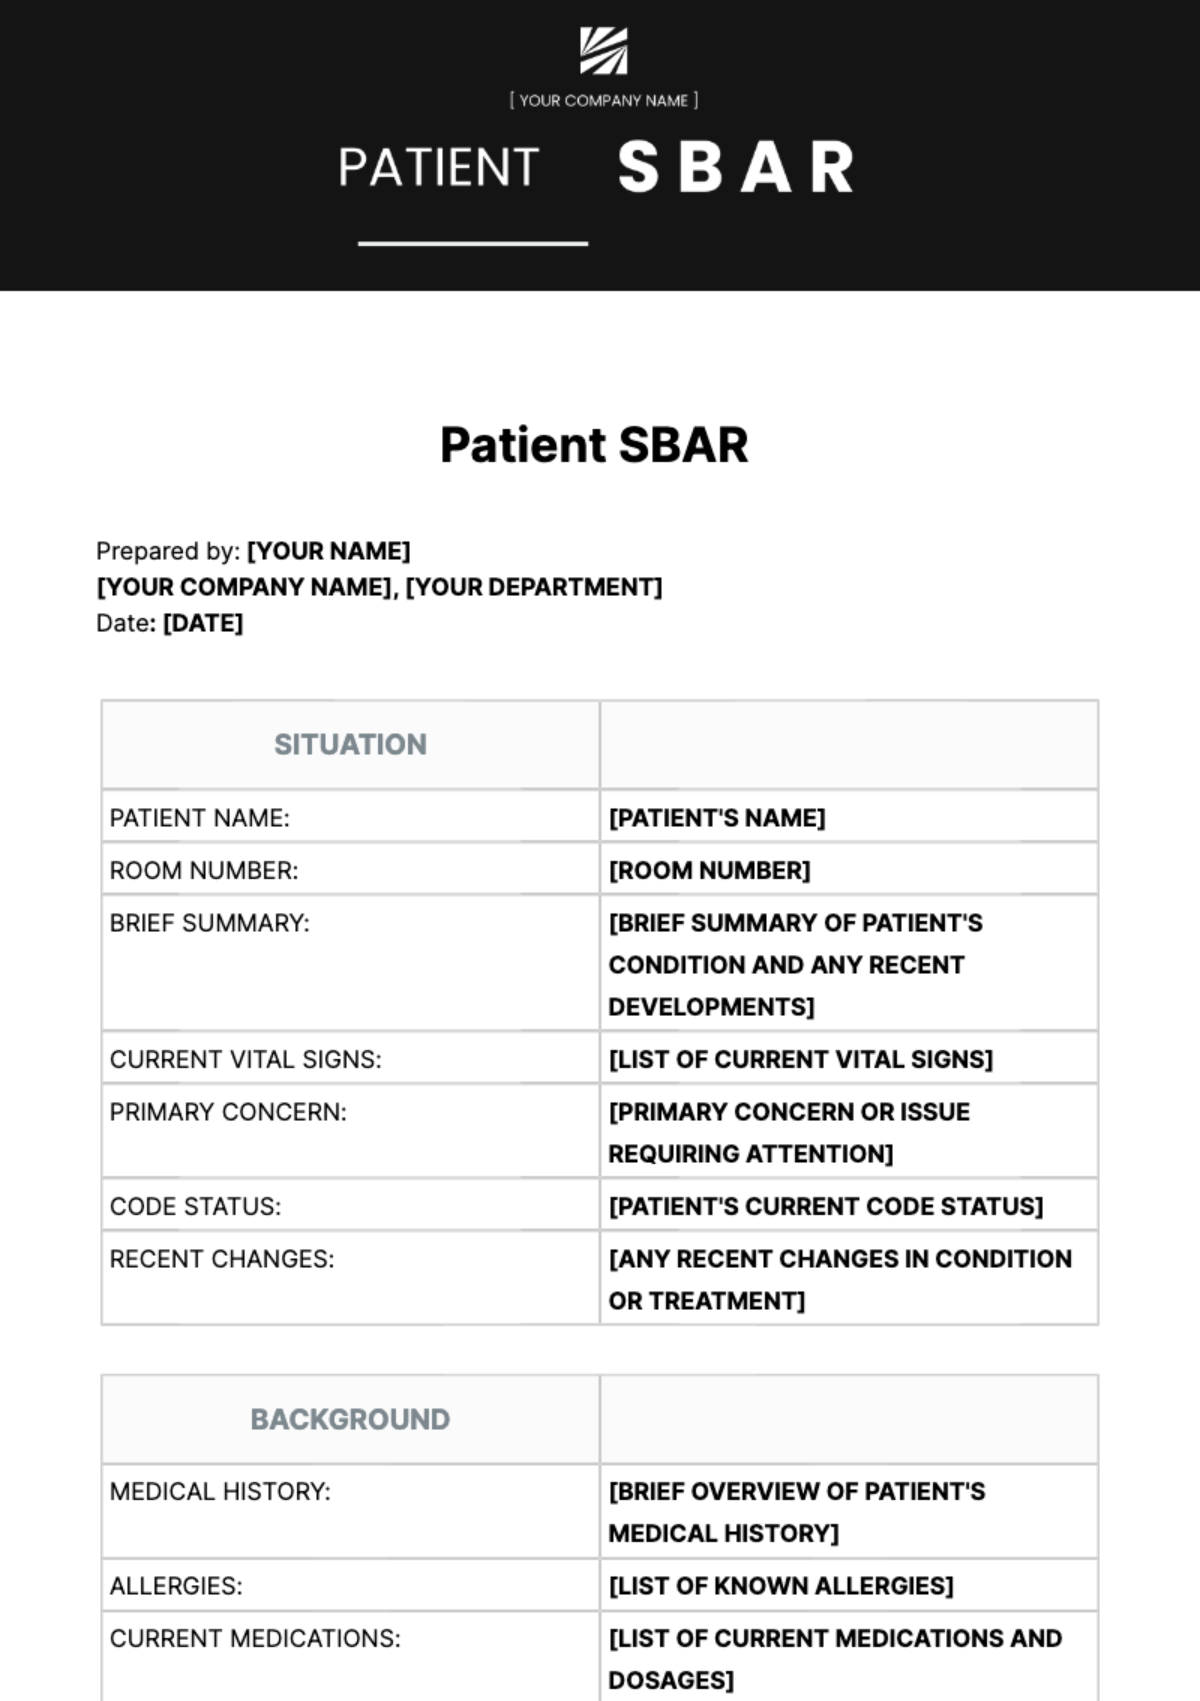 Patient SBAR Template